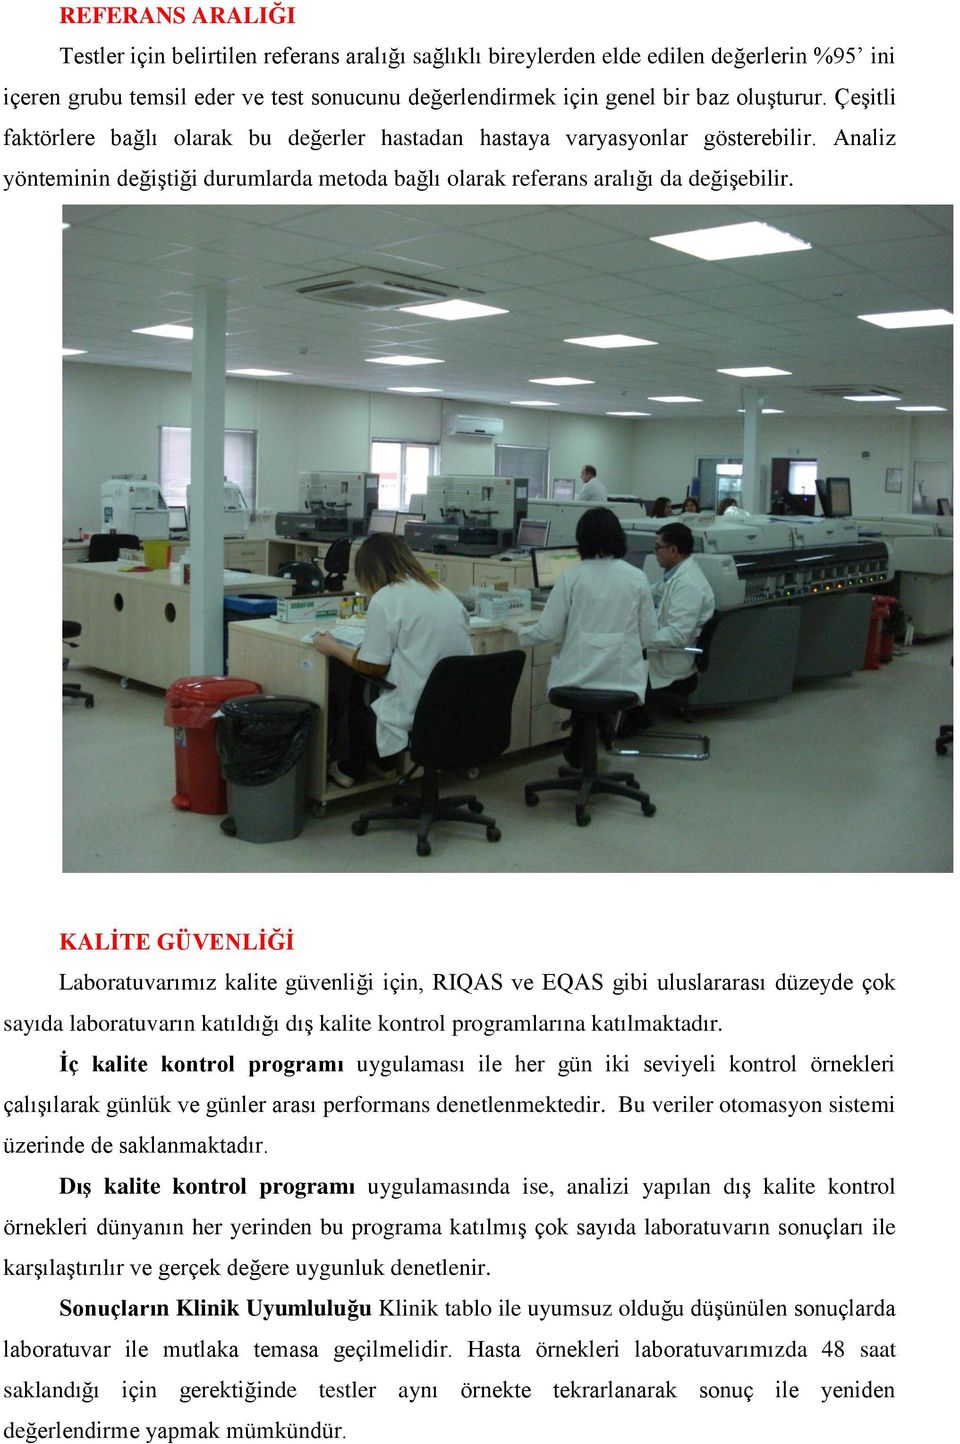 KALĠTE GÜVENLĠĞĠ Laboratuvarımız kalite güvenliği için, RIQAS ve EQAS gibi uluslararası düzeyde çok sayıda laboratuvarın katıldığı dış kalite kontrol programlarına katılmaktadır.